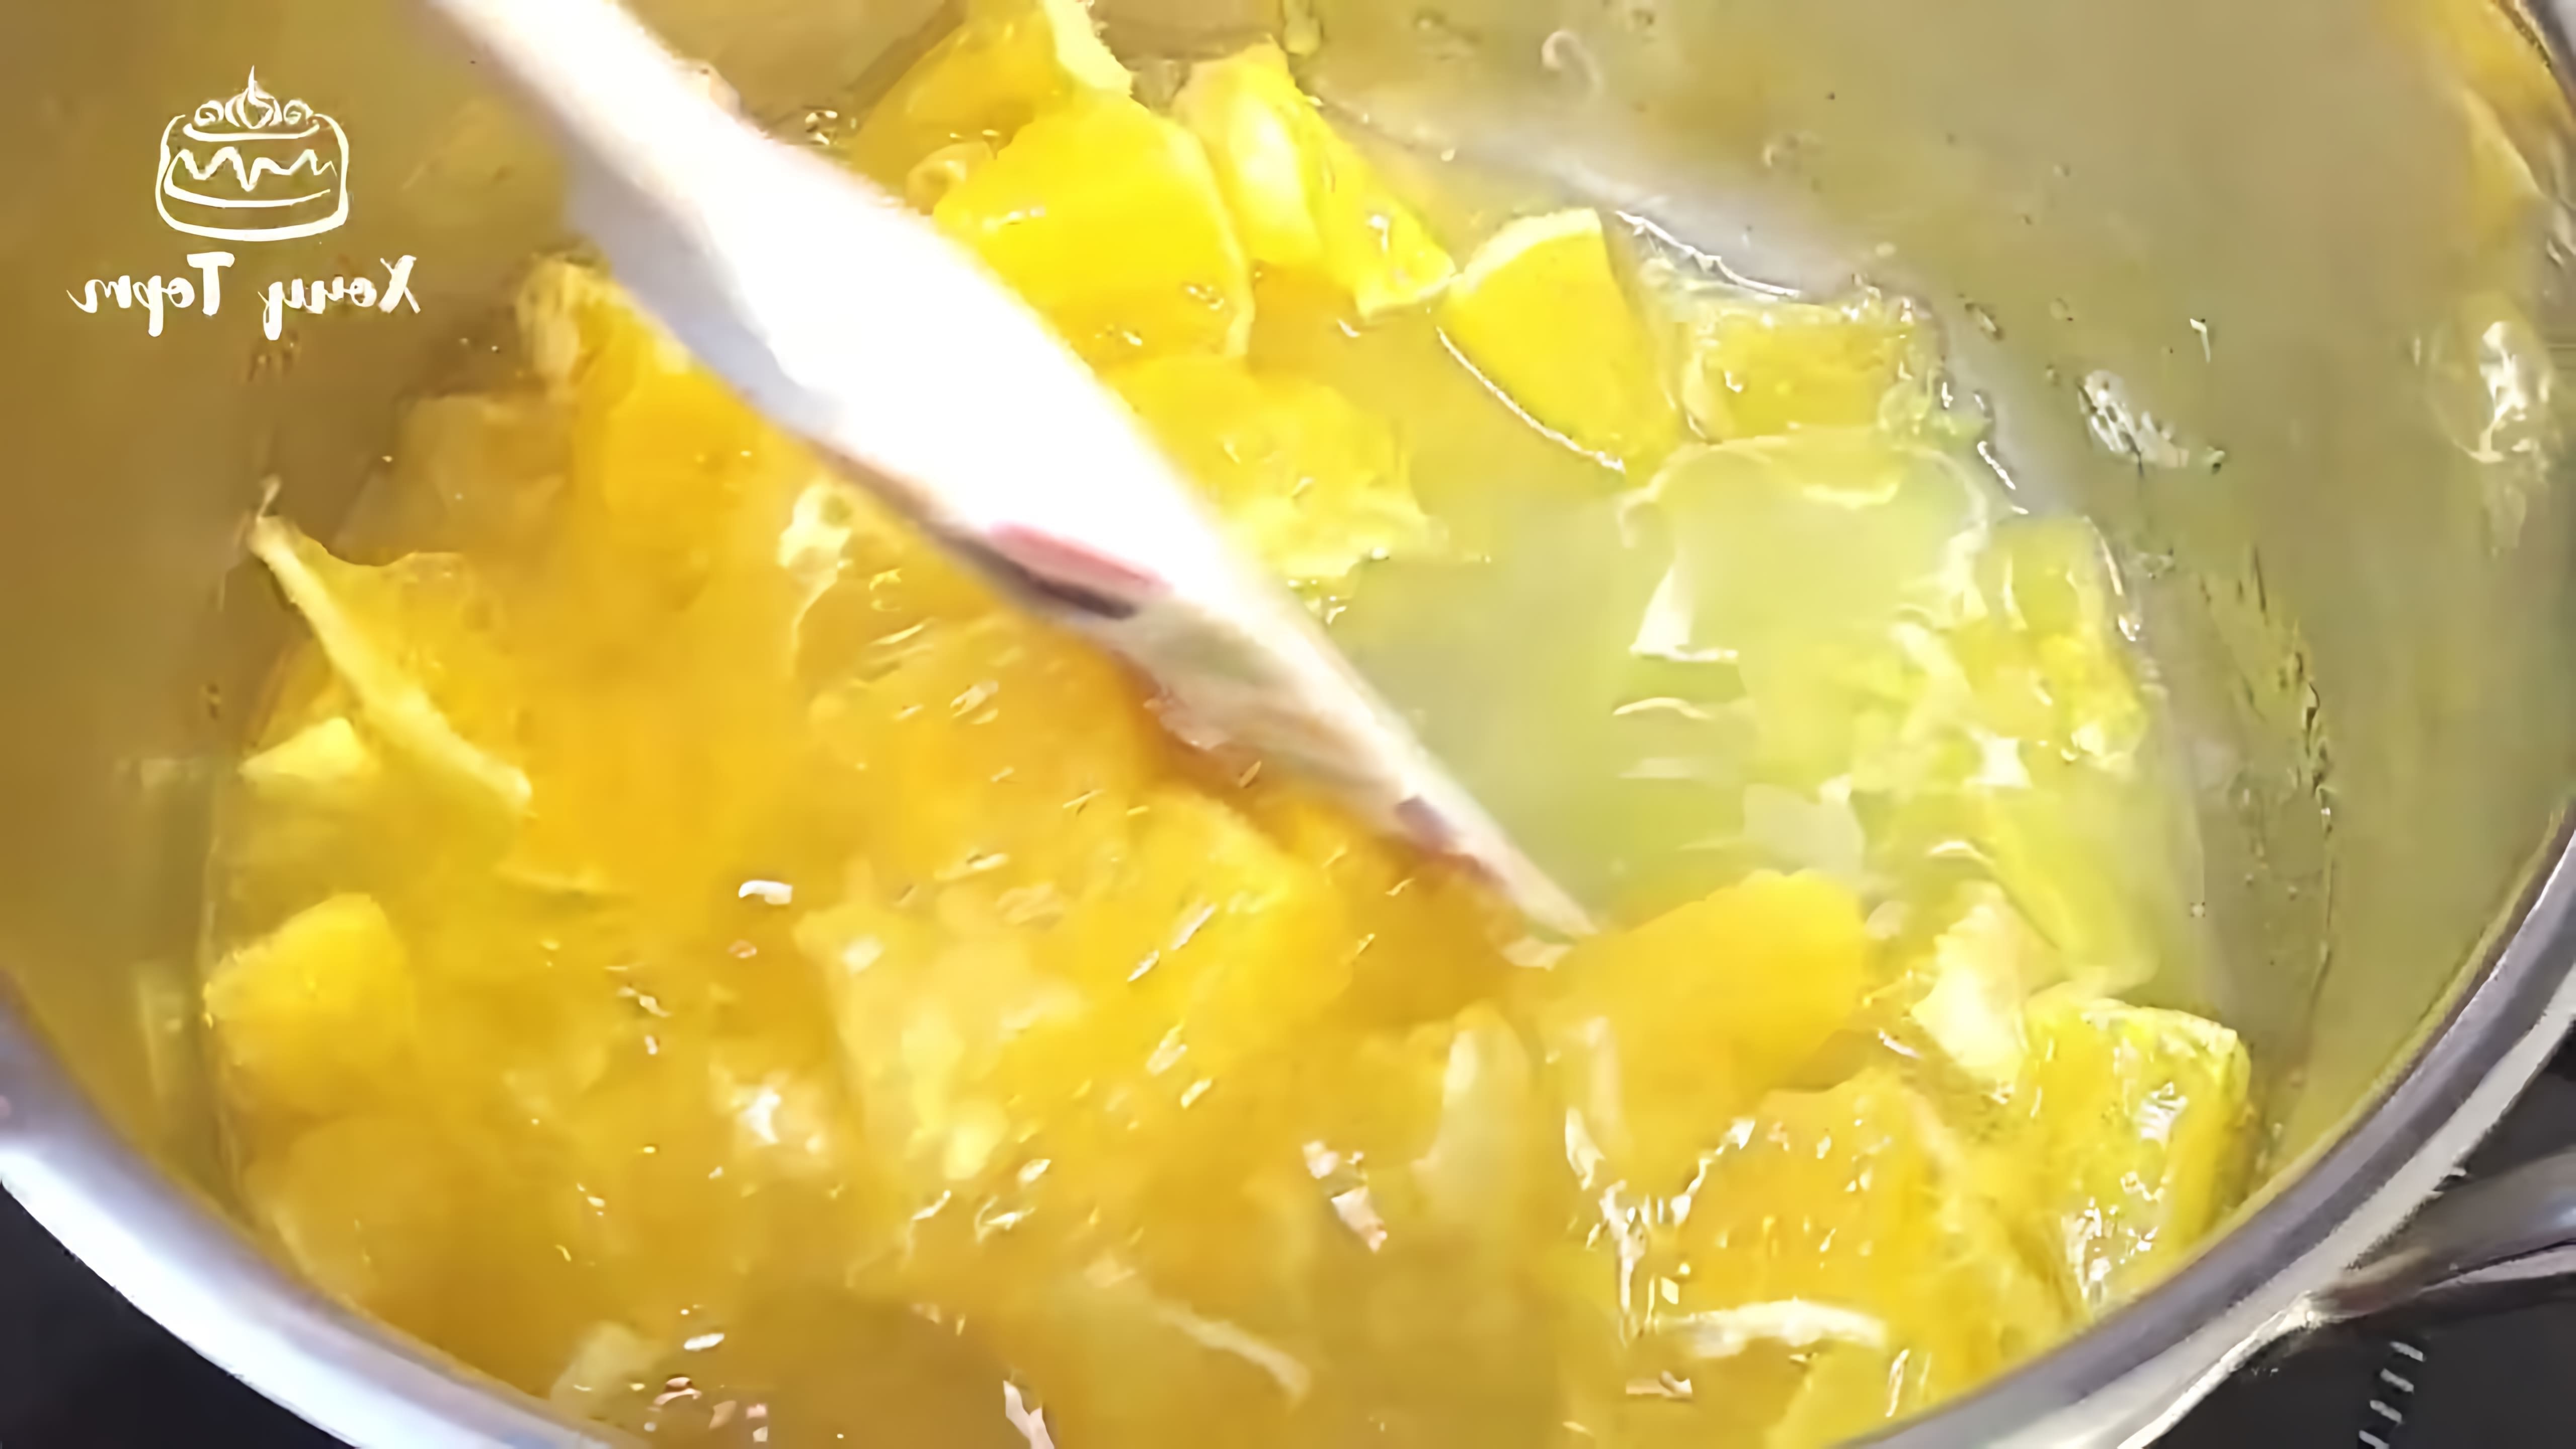 В этом видео демонстрируется процесс приготовления апельсинового конфи для начинки торта или рулета